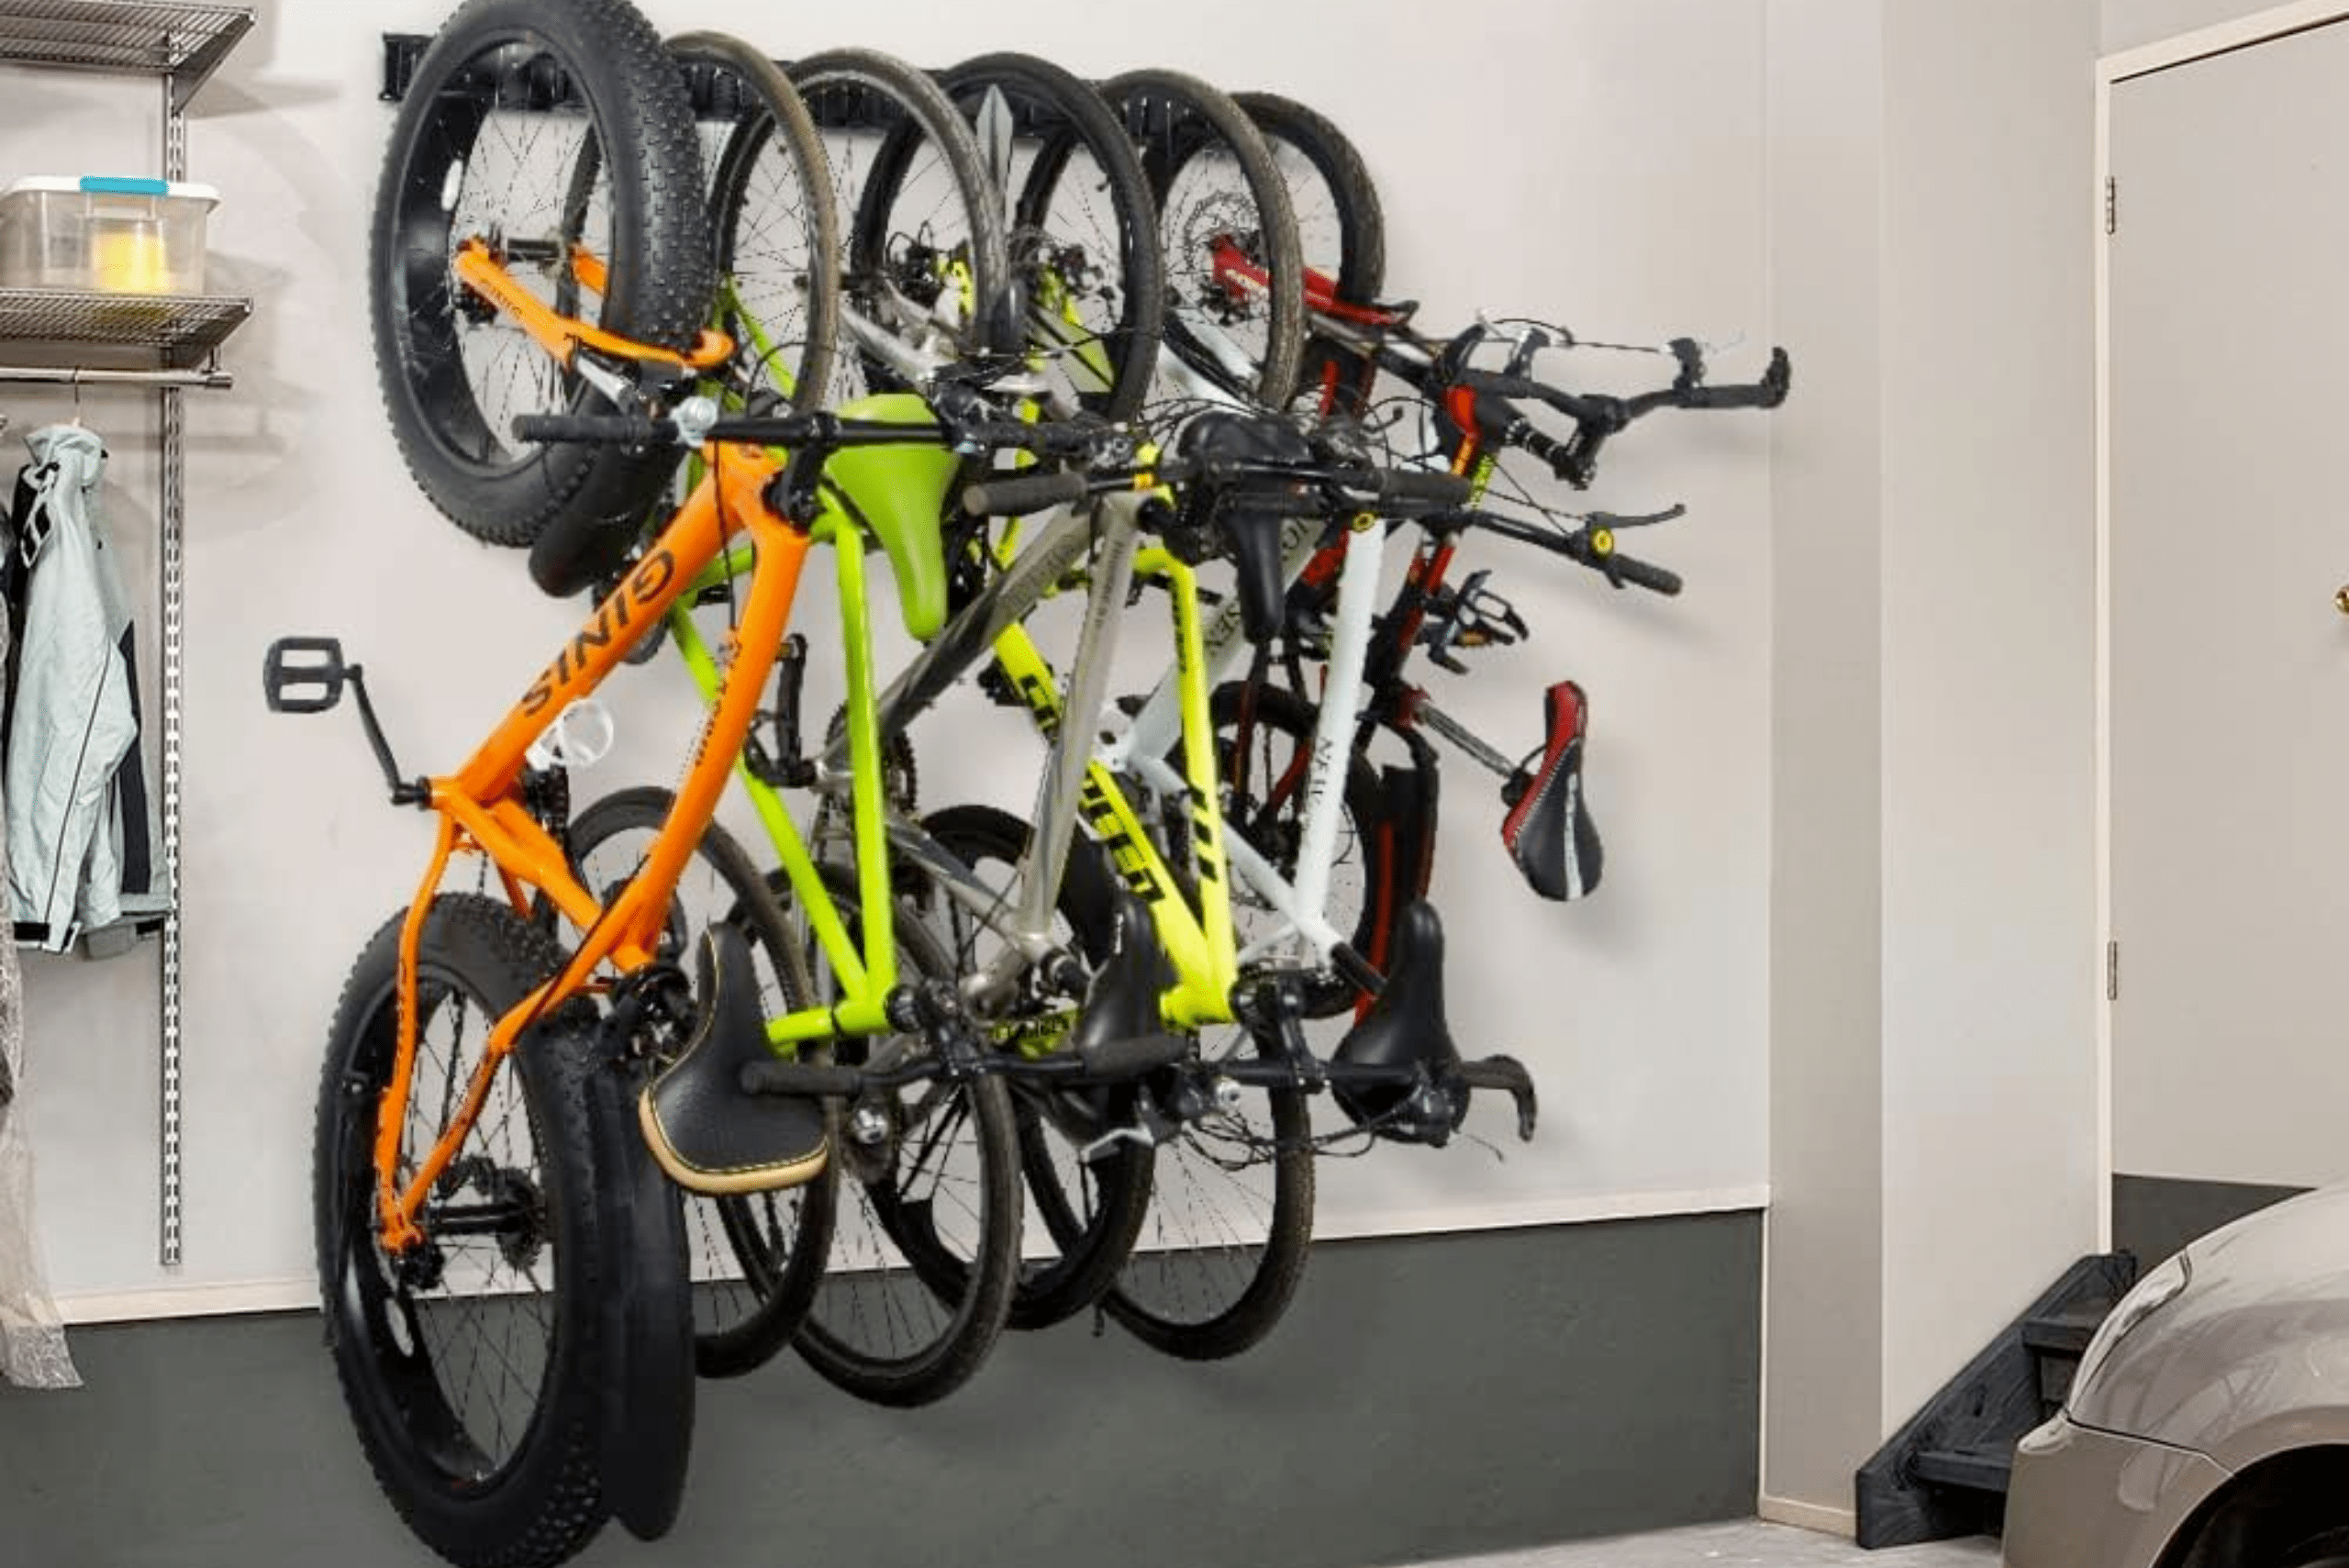 Bikes mounted on a wall garage bike rack.